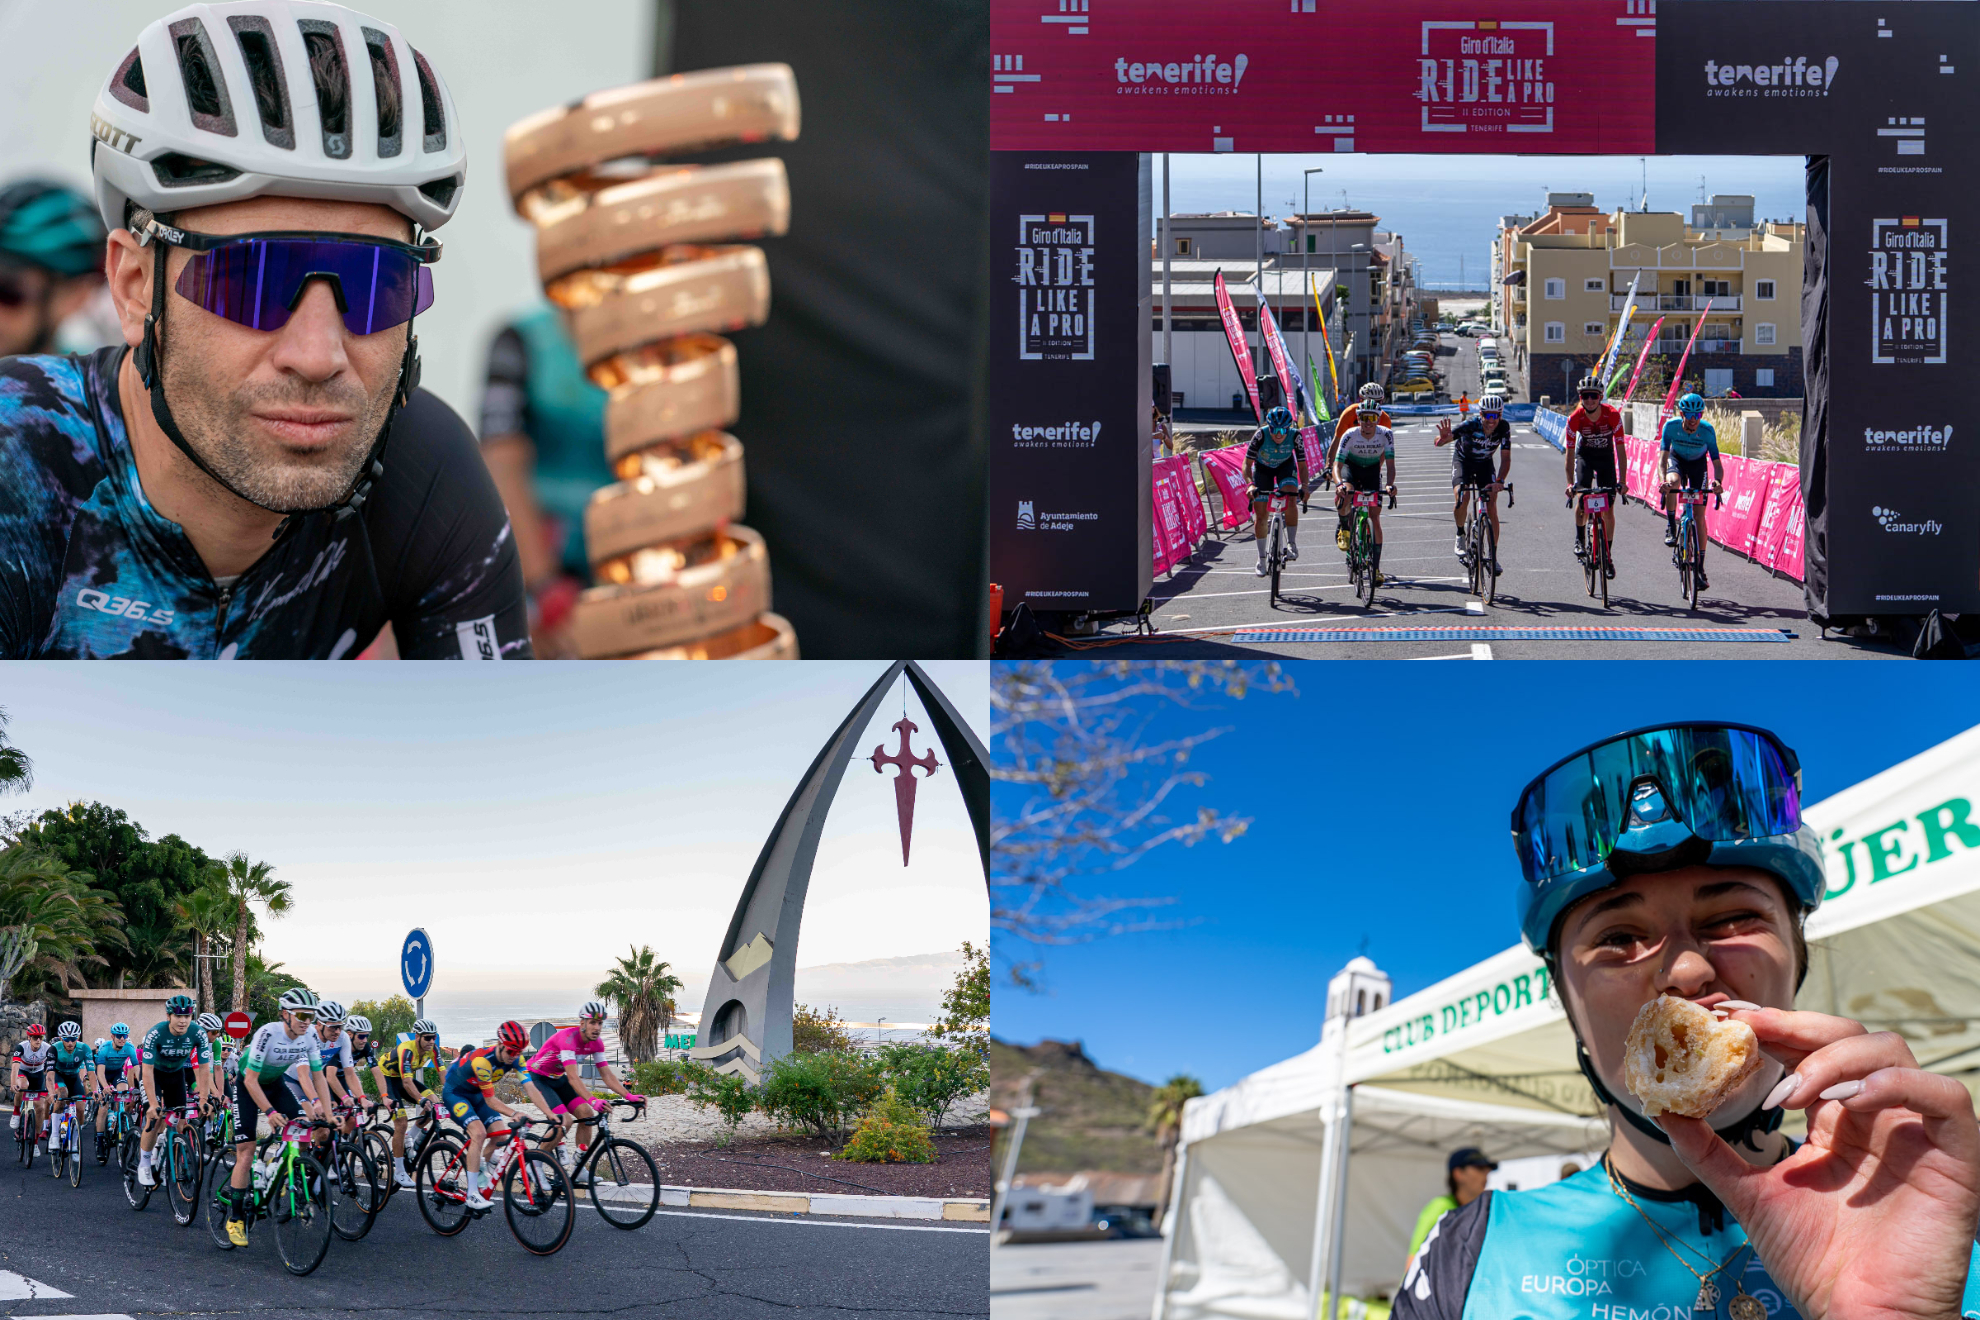 Inicio multitudinario y exigente del Giro d'Italia Ride Like A Pro Spain 2023 en Tenerife